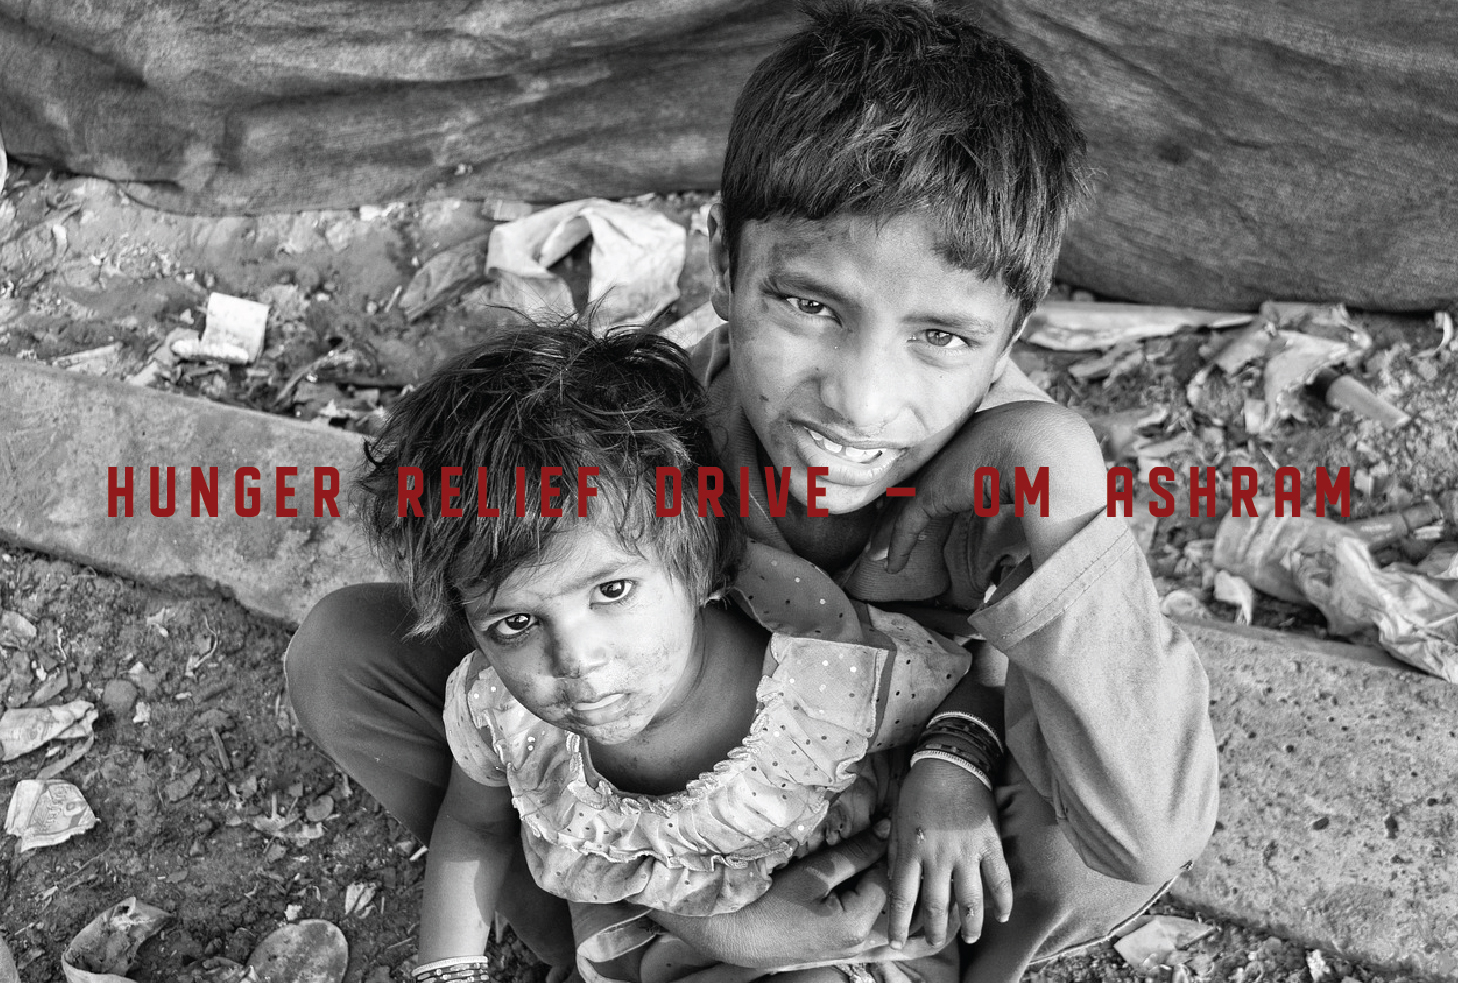 Hunger Relief Drive - Om Ashram